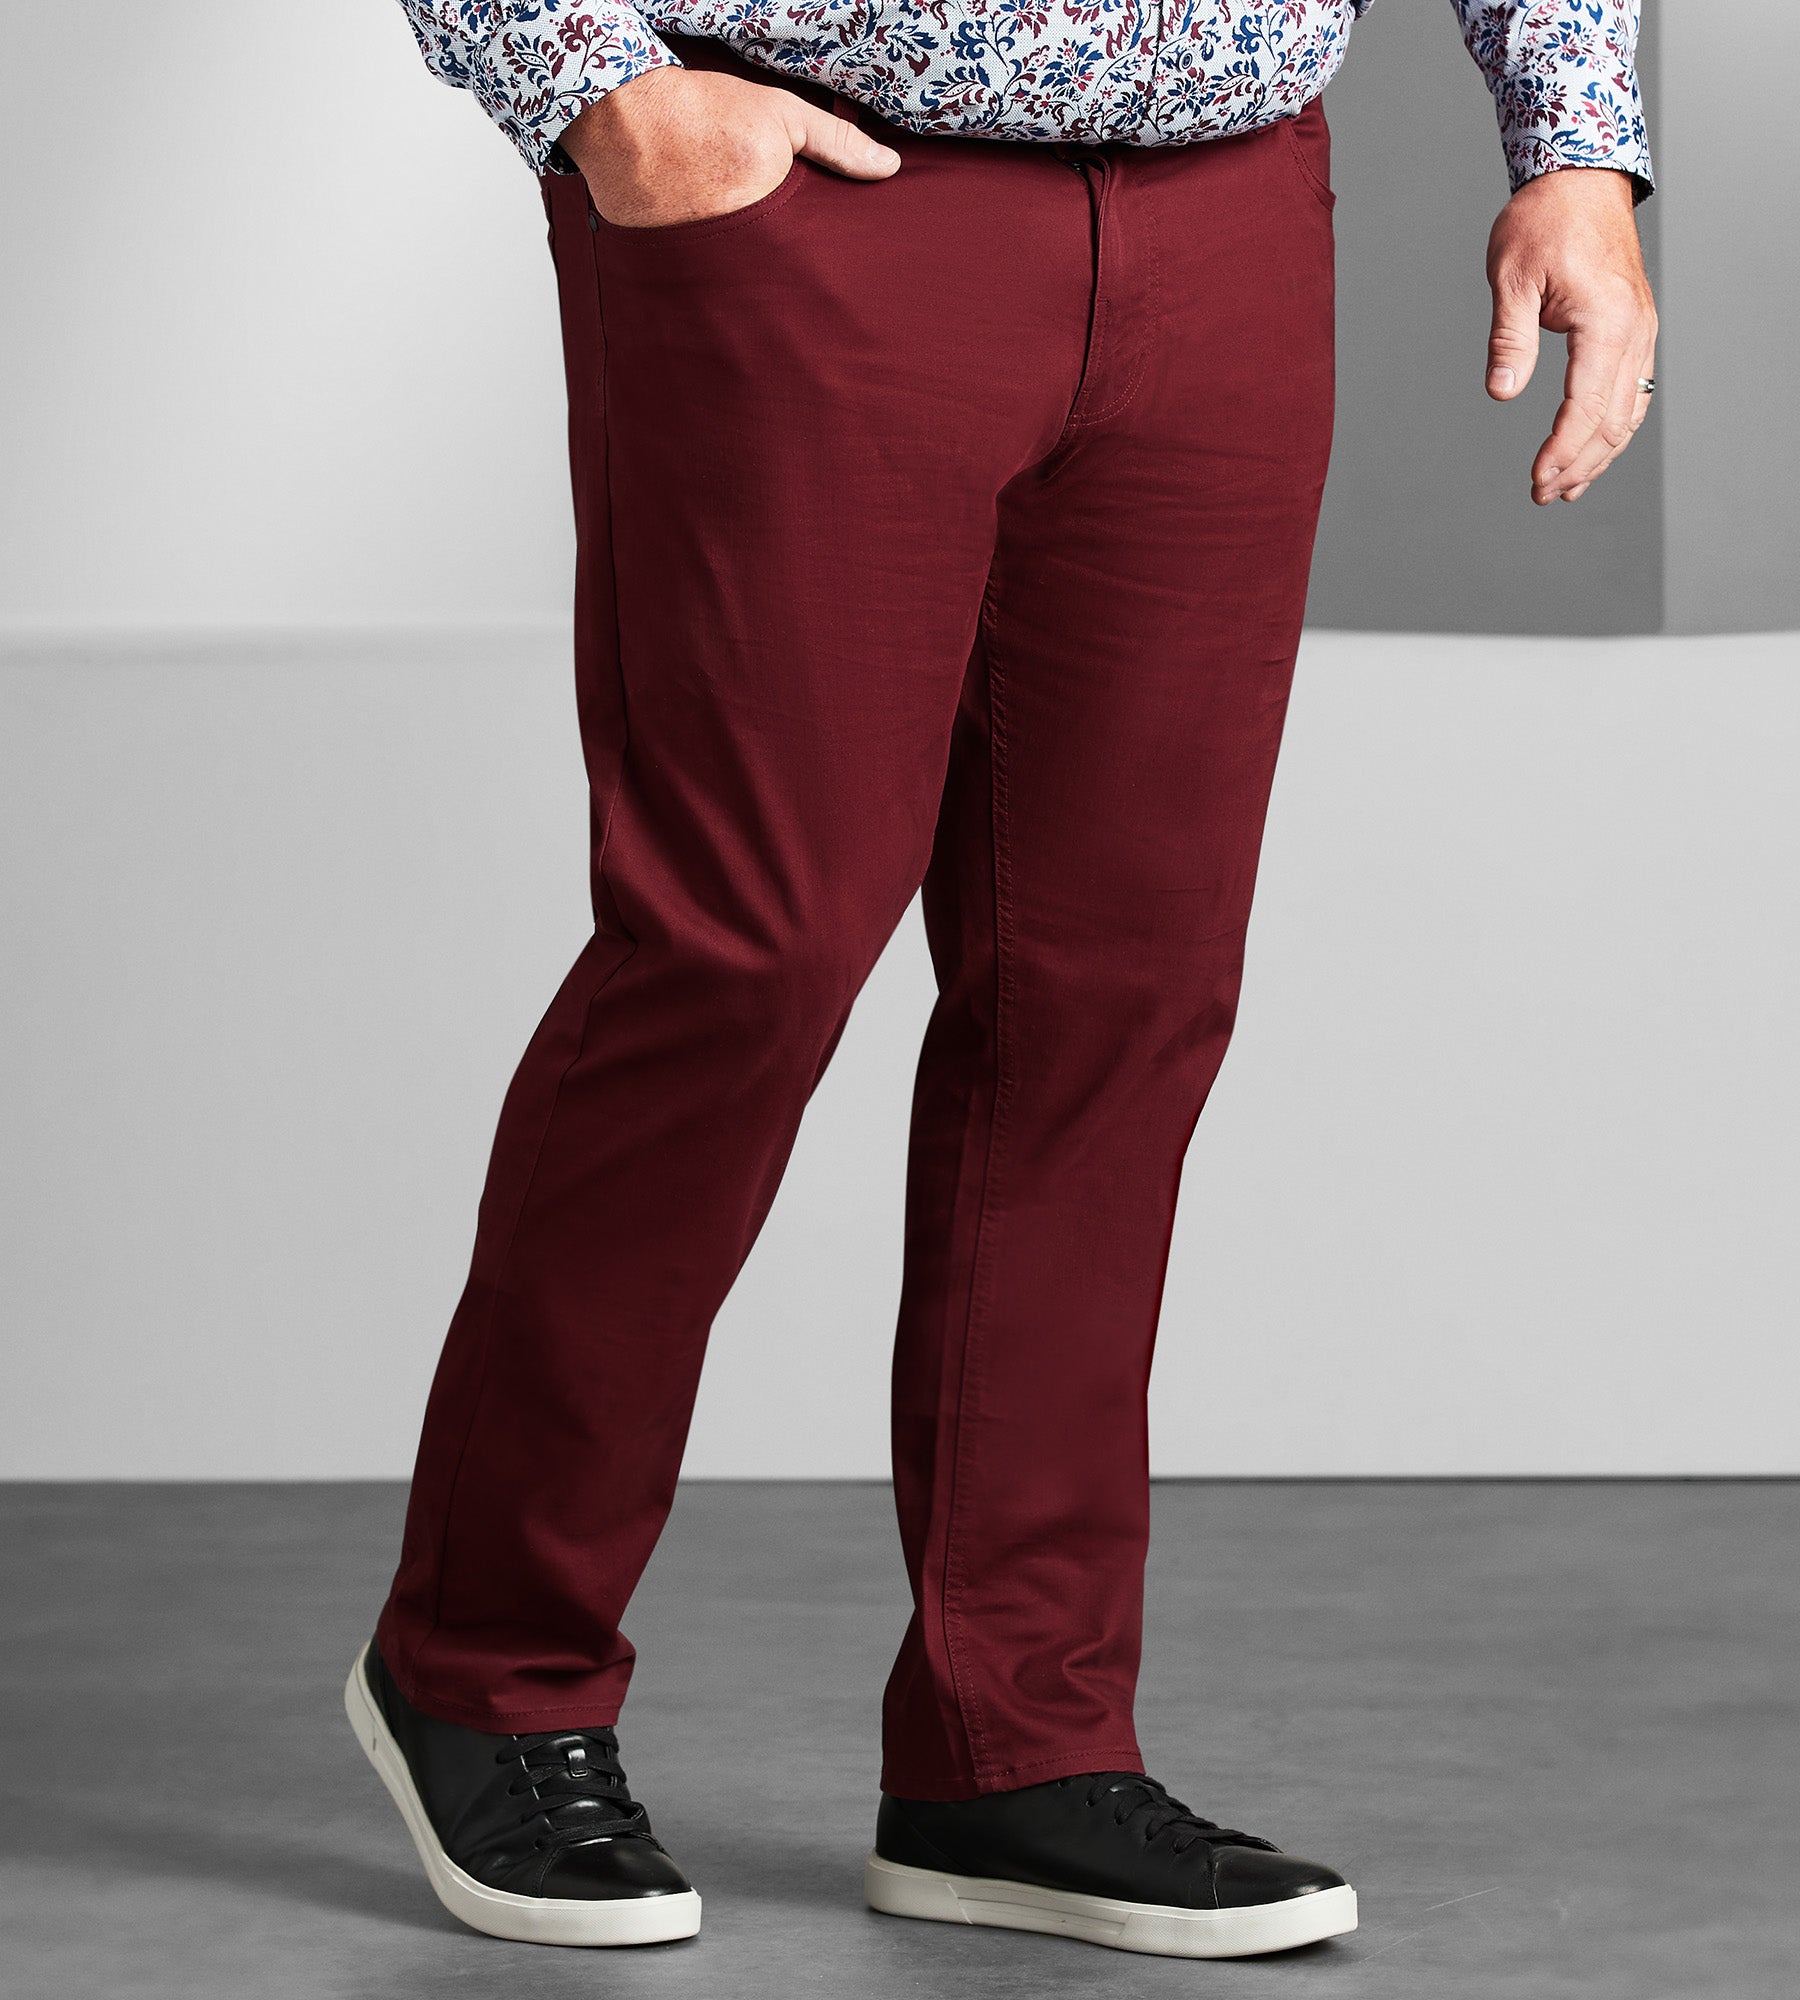 Five-Pocket Twill Pants – Mr. Big & Tall